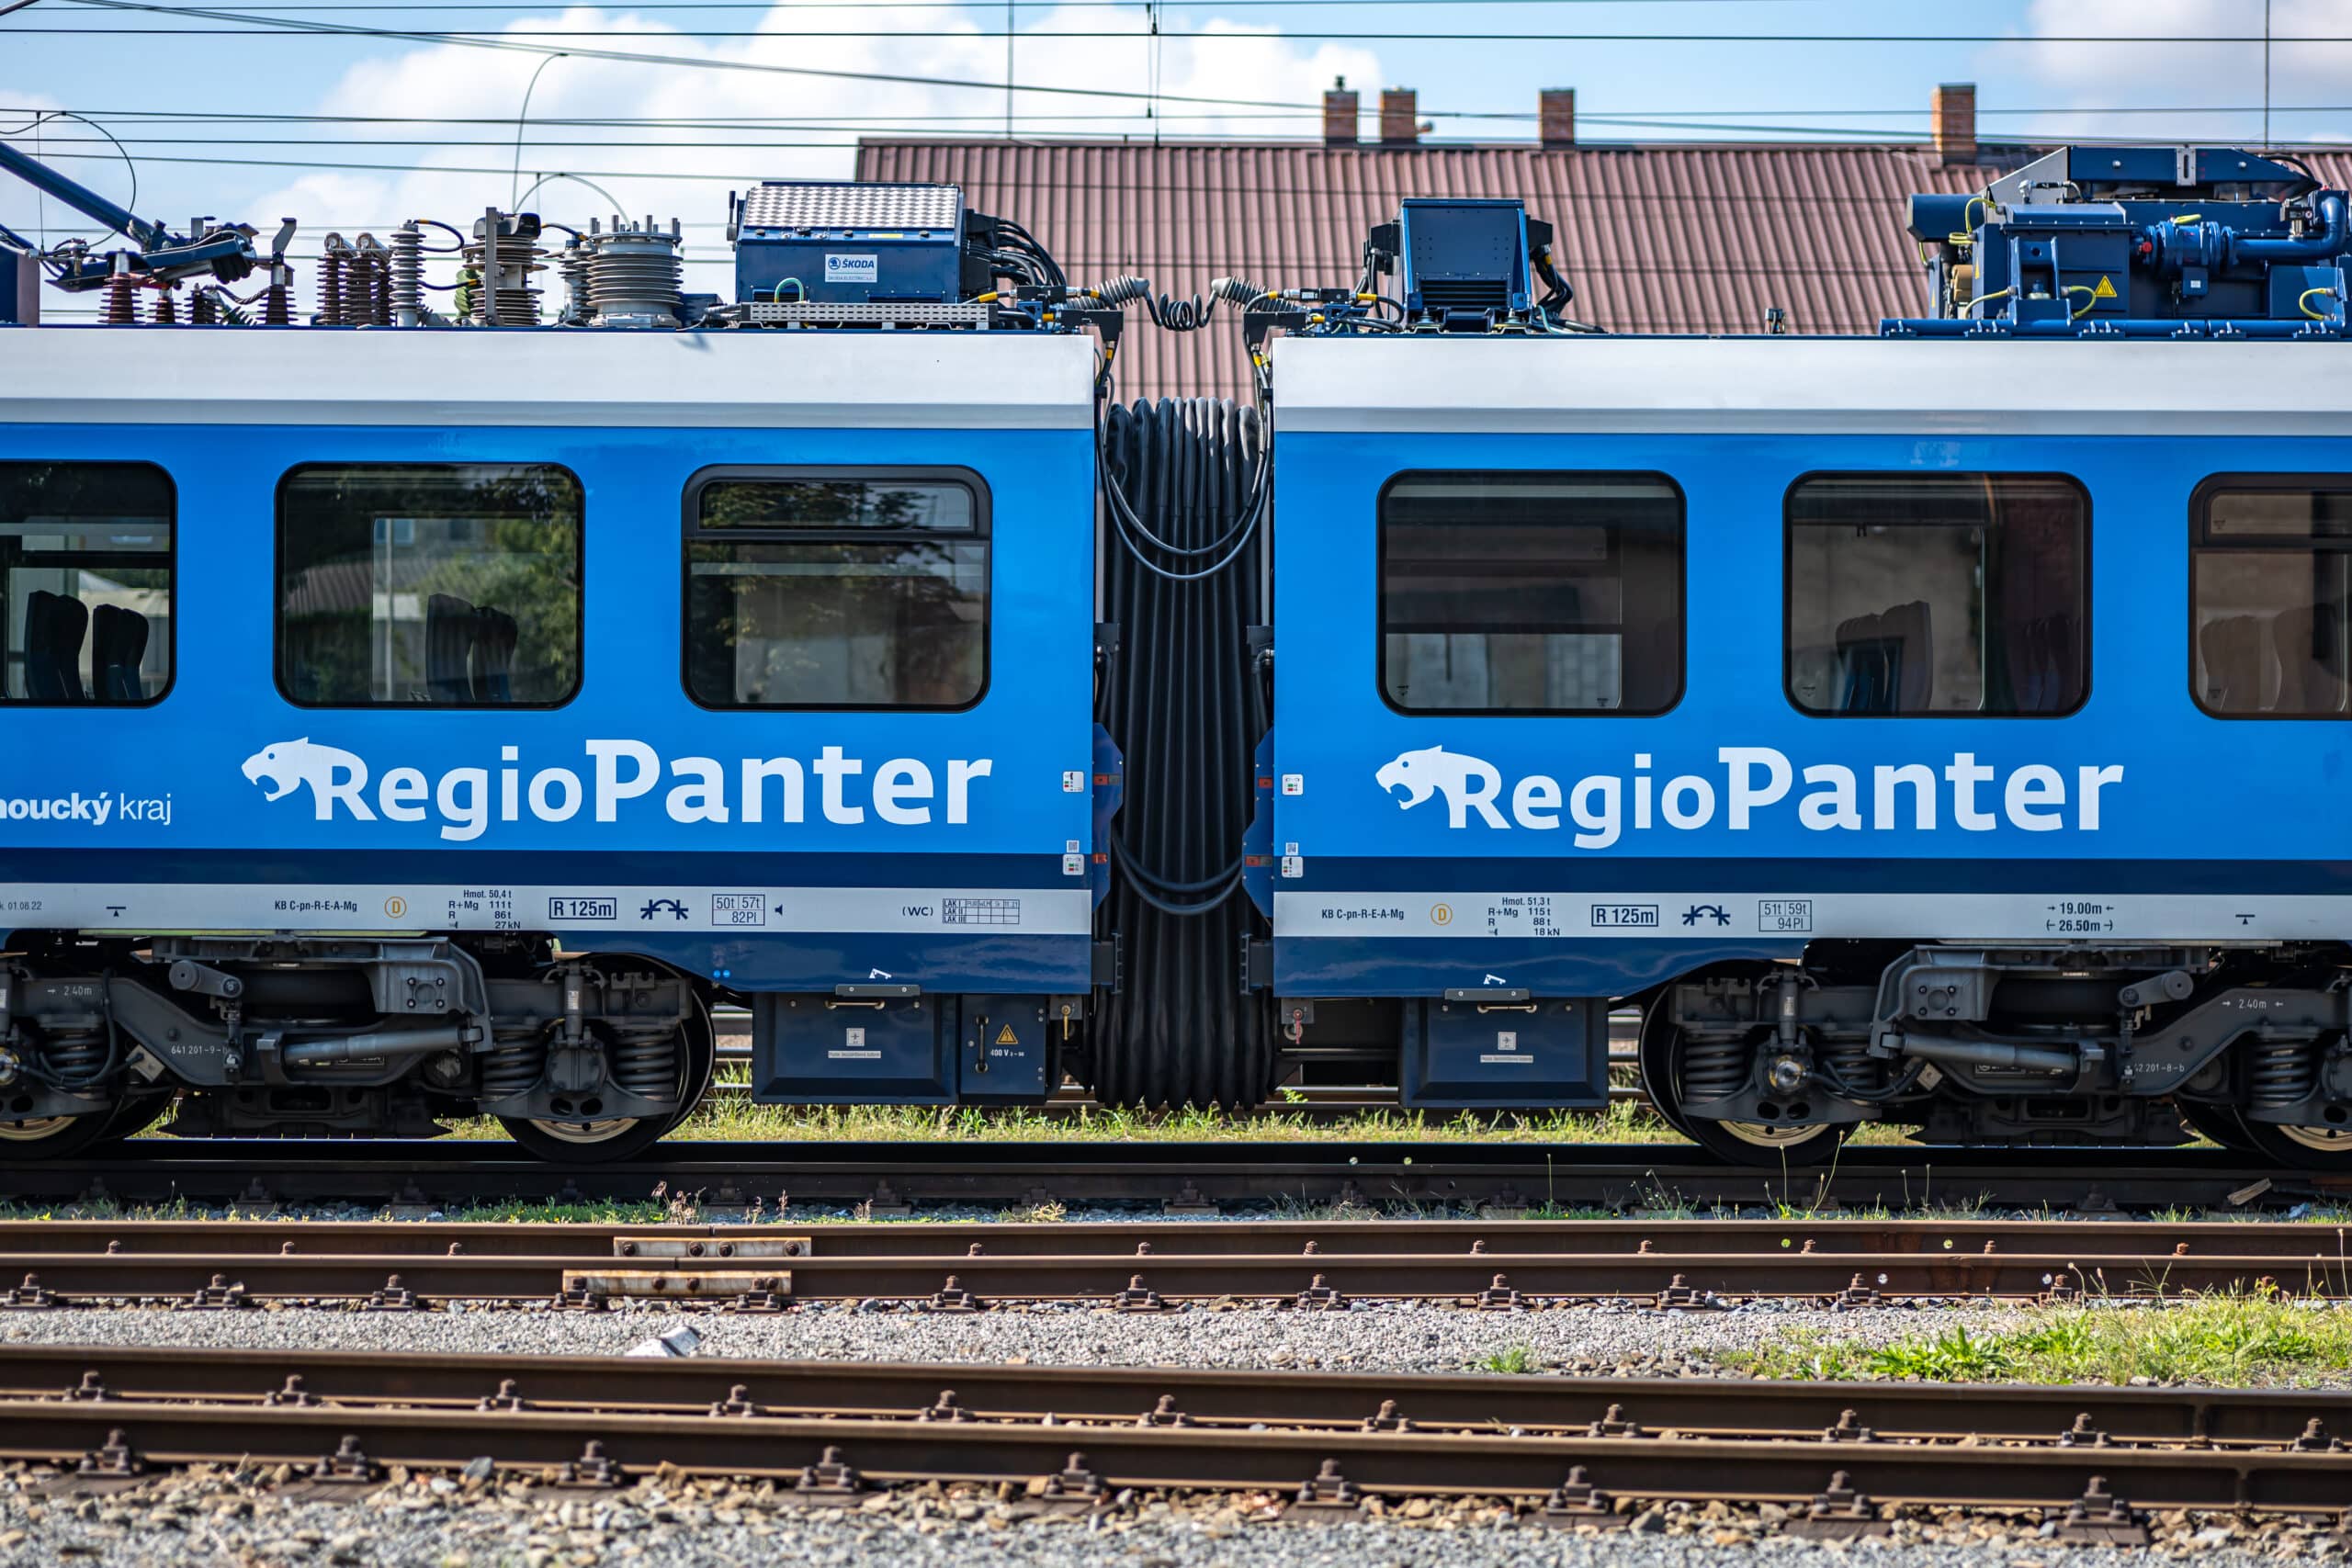 Ilustrační foto - Olomouckým krajem po elektrifikovaných tratích jednotkami RegioPanter - IDSOK 1